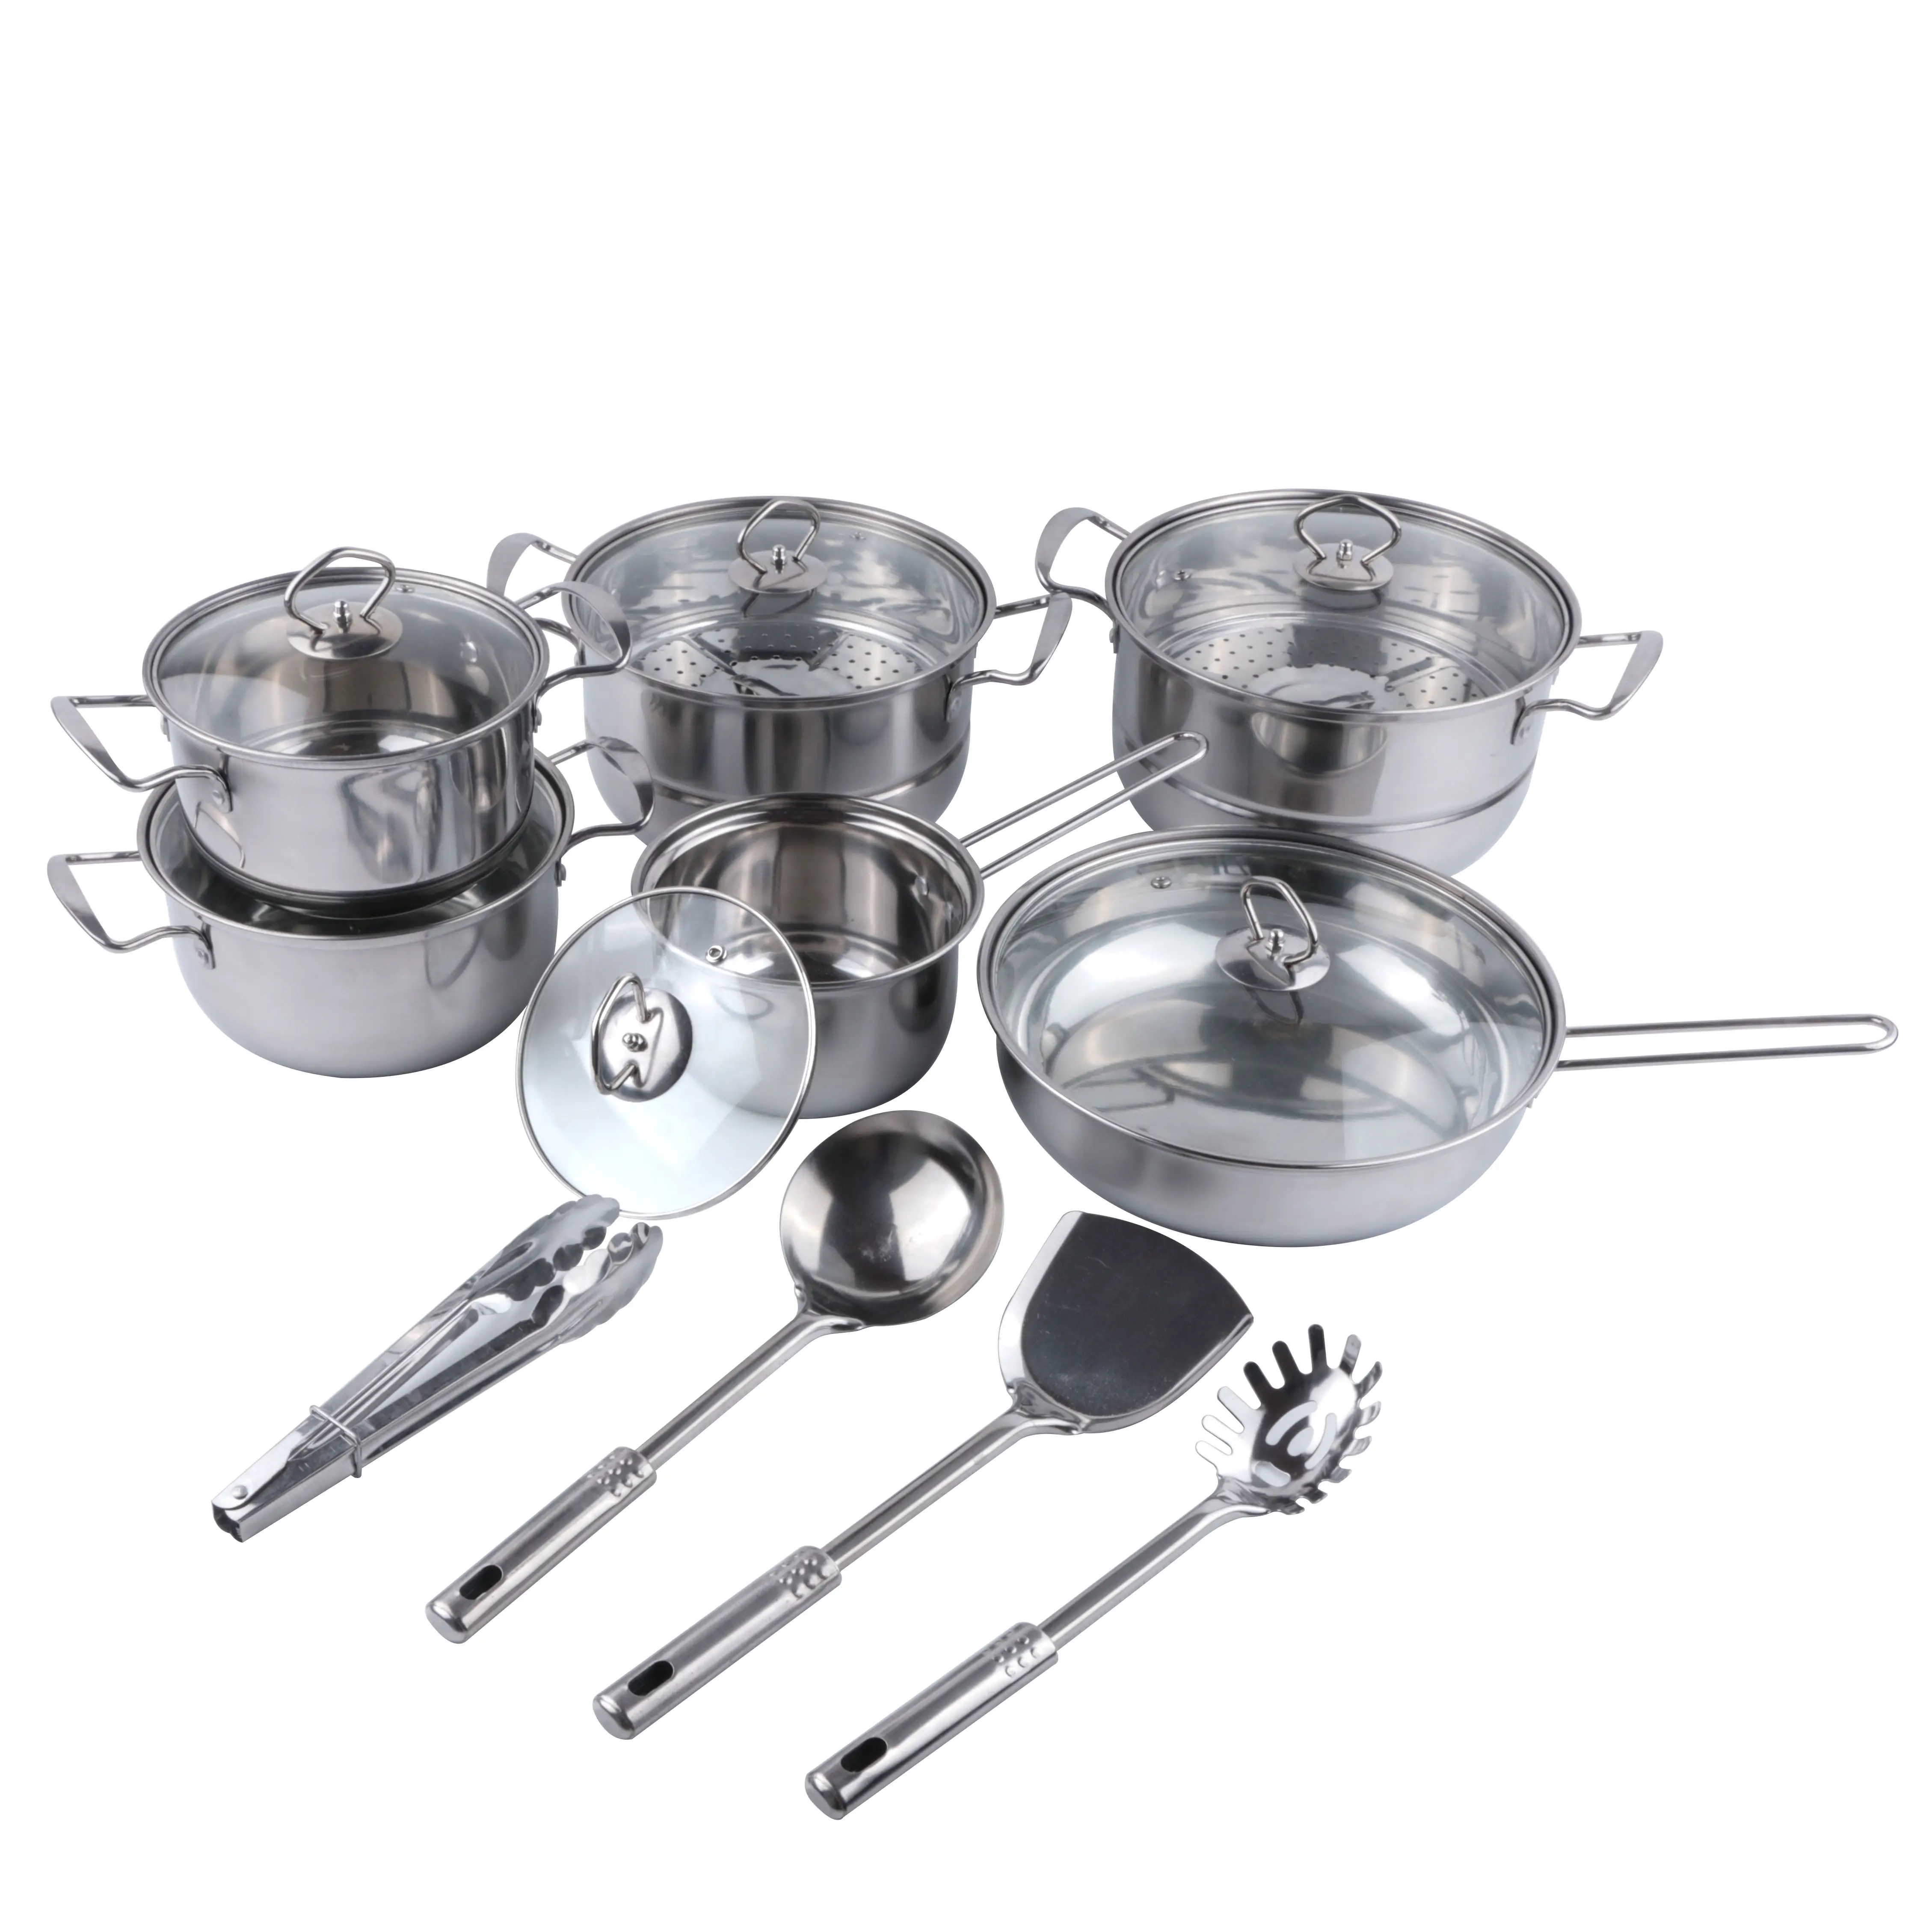 Set Peralatan Masak Dapur, Panci & Panci Dapur Stainless Steel 18 Buah dengan Penutup Kaca, Set Alat Masak